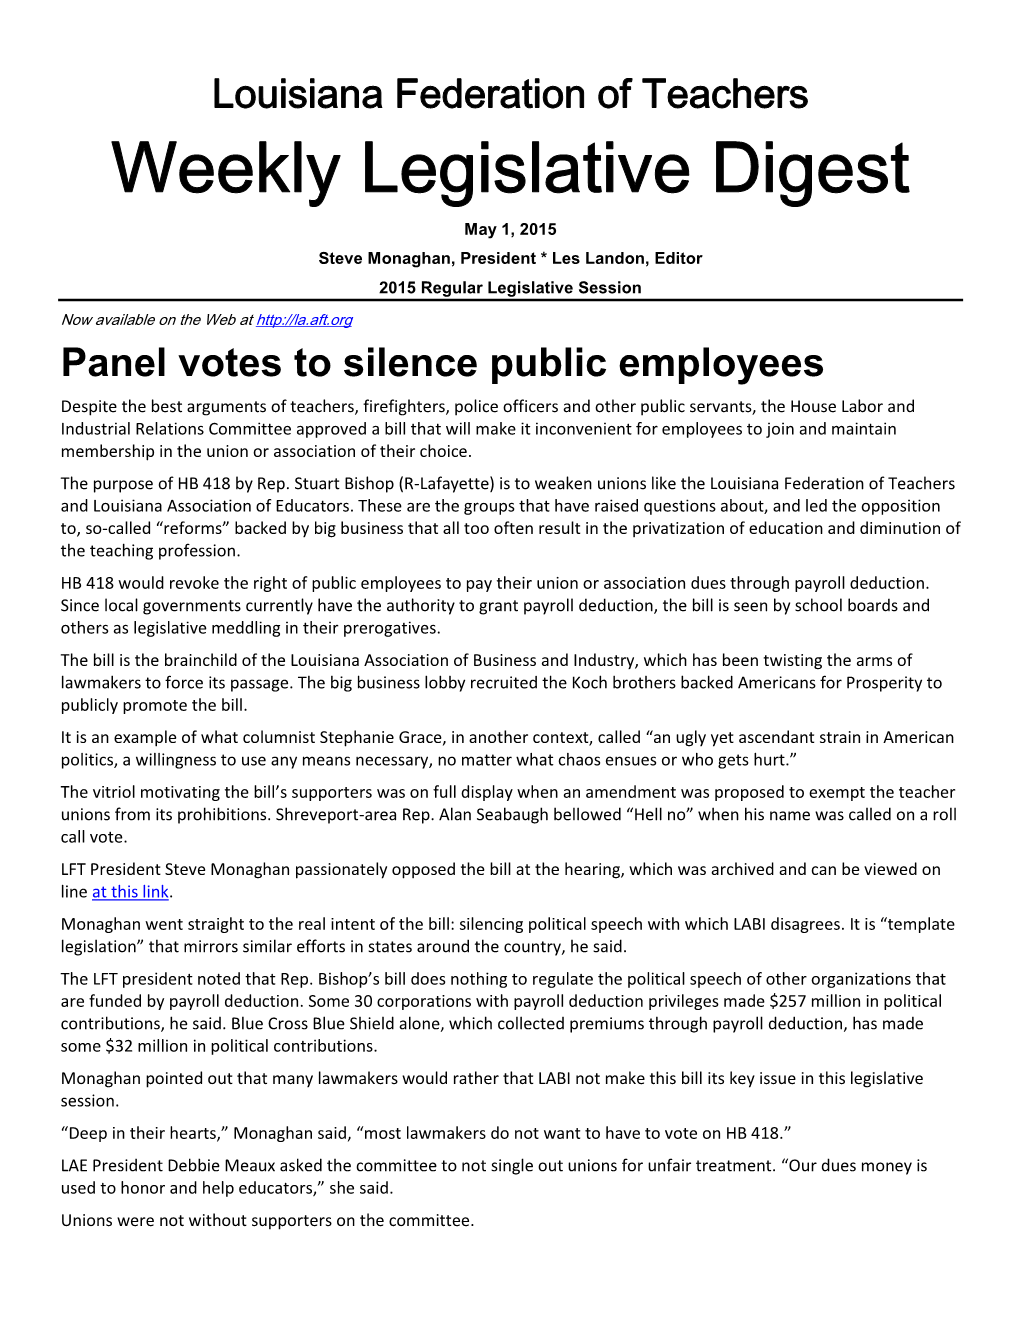 Weekly Legislative Digest